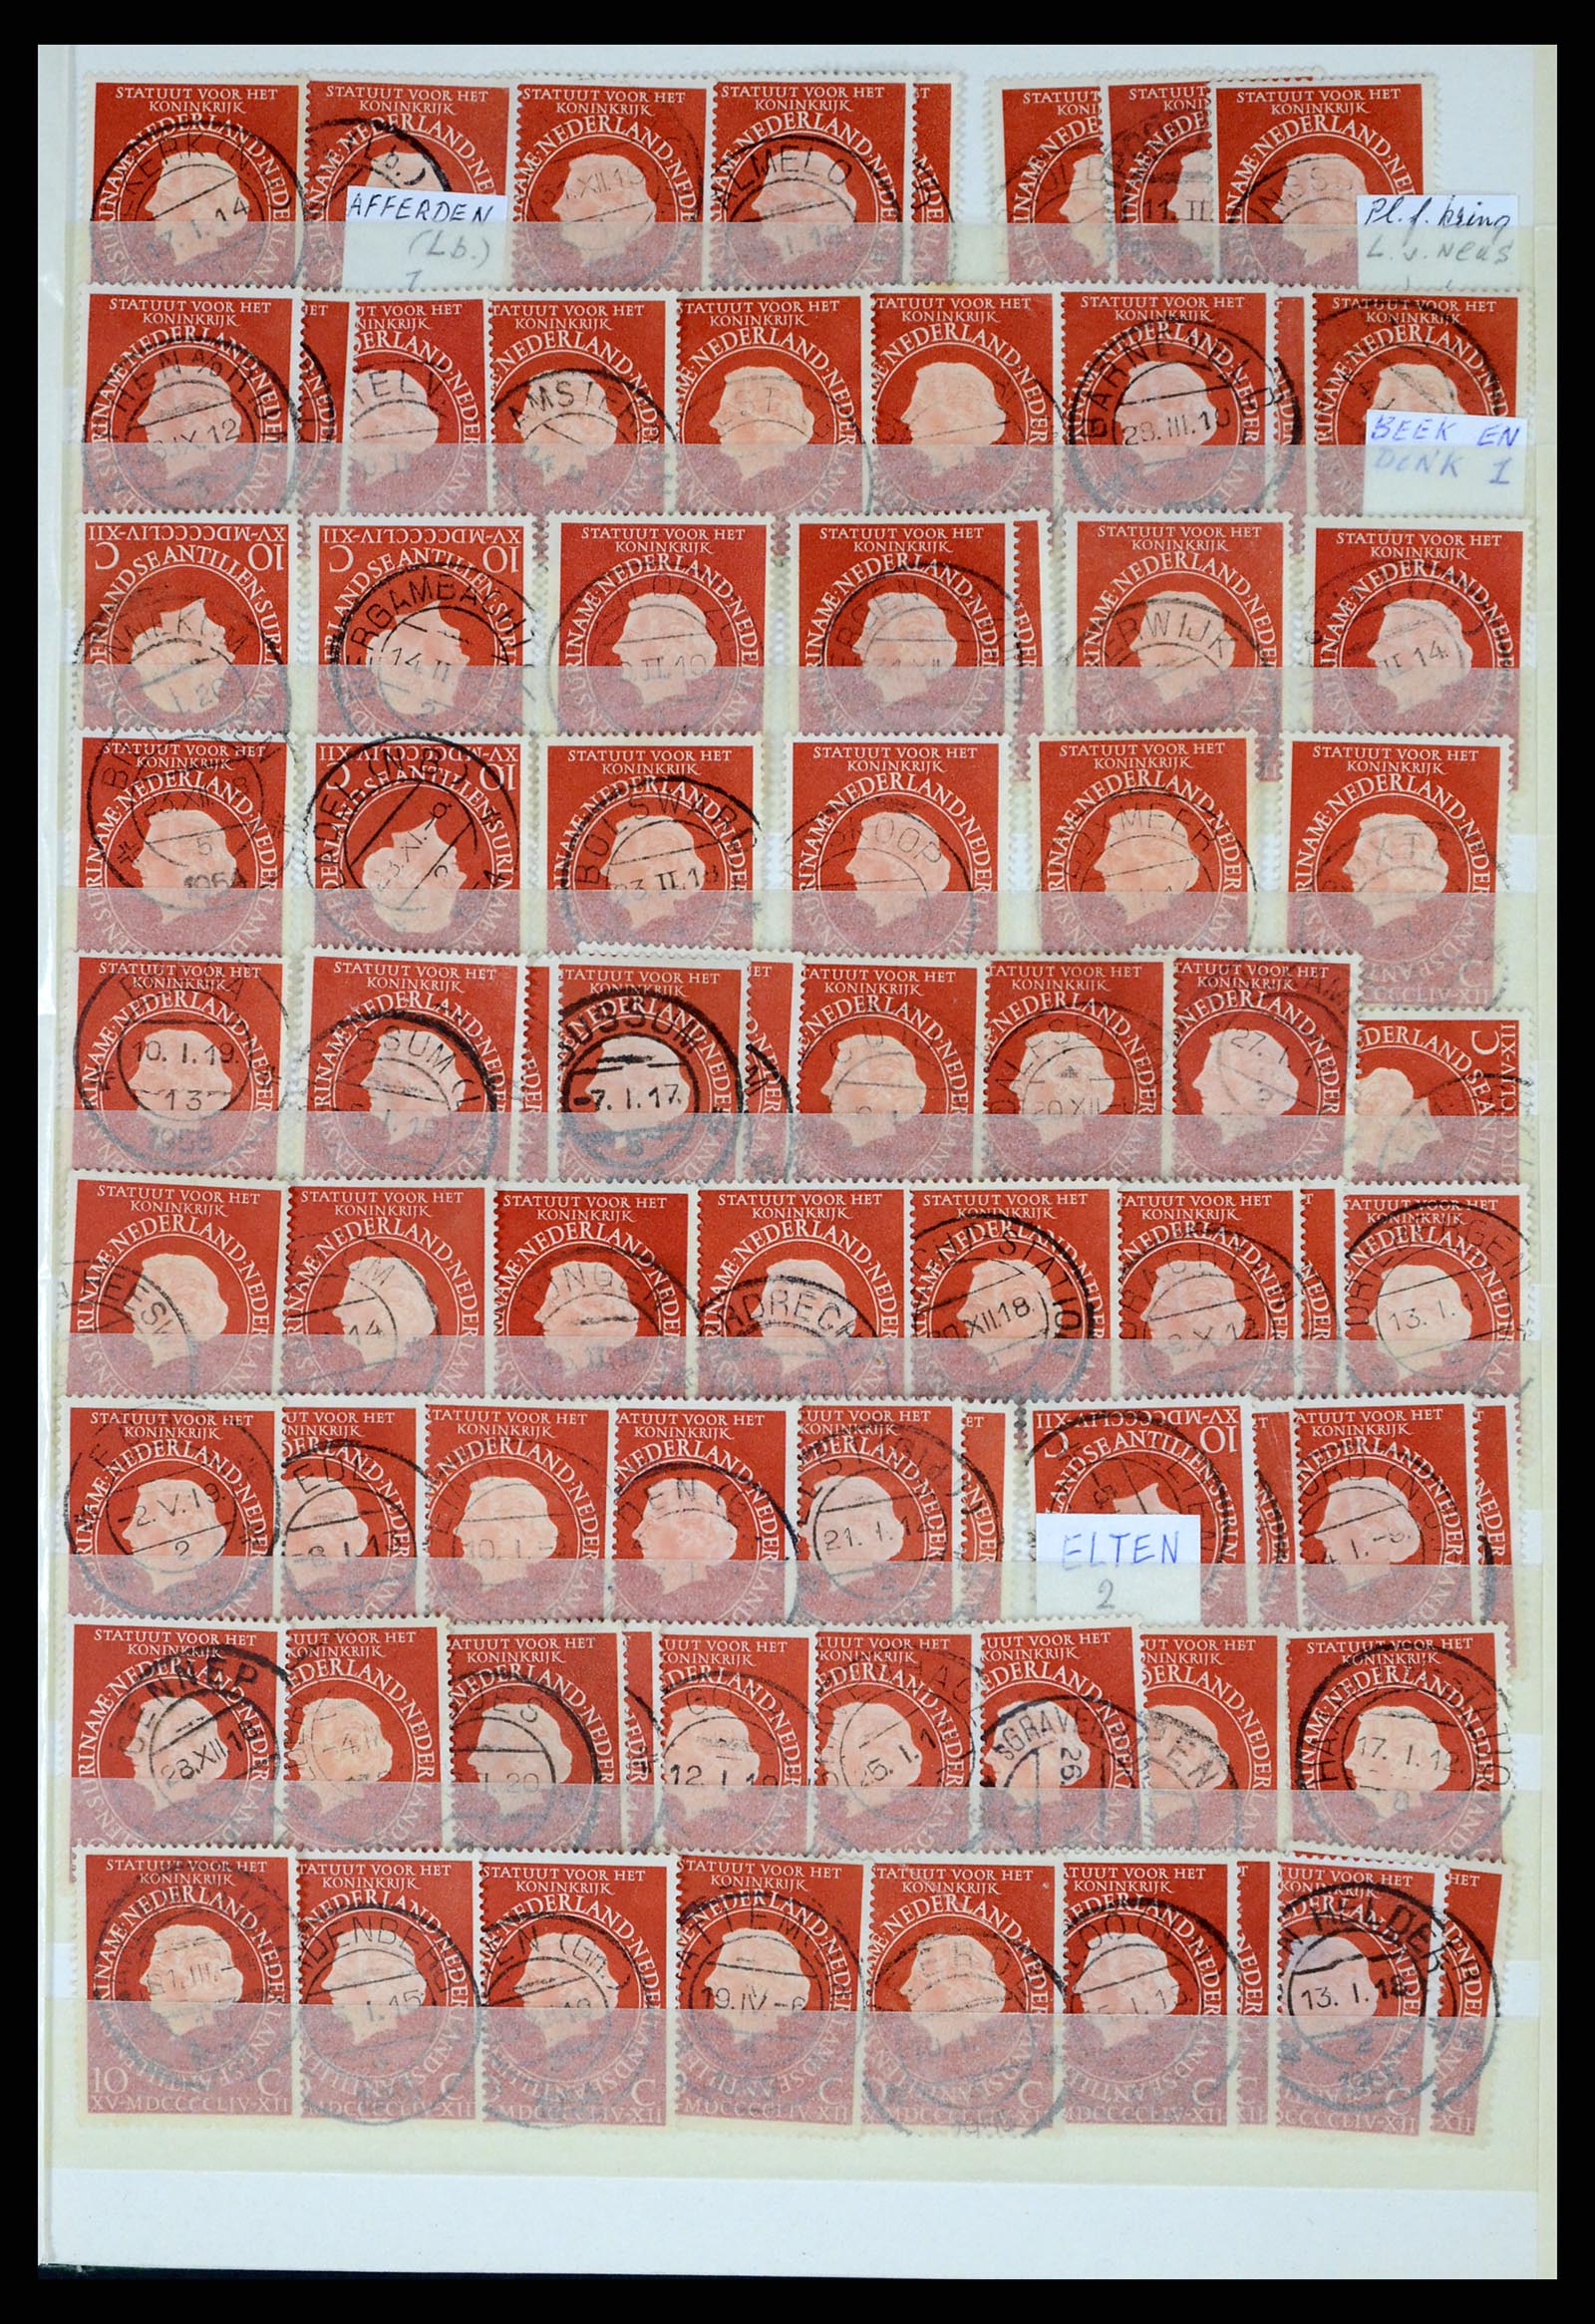 37424 049 - Postzegelverzameling 37424 Nederland kortebalk stempels.